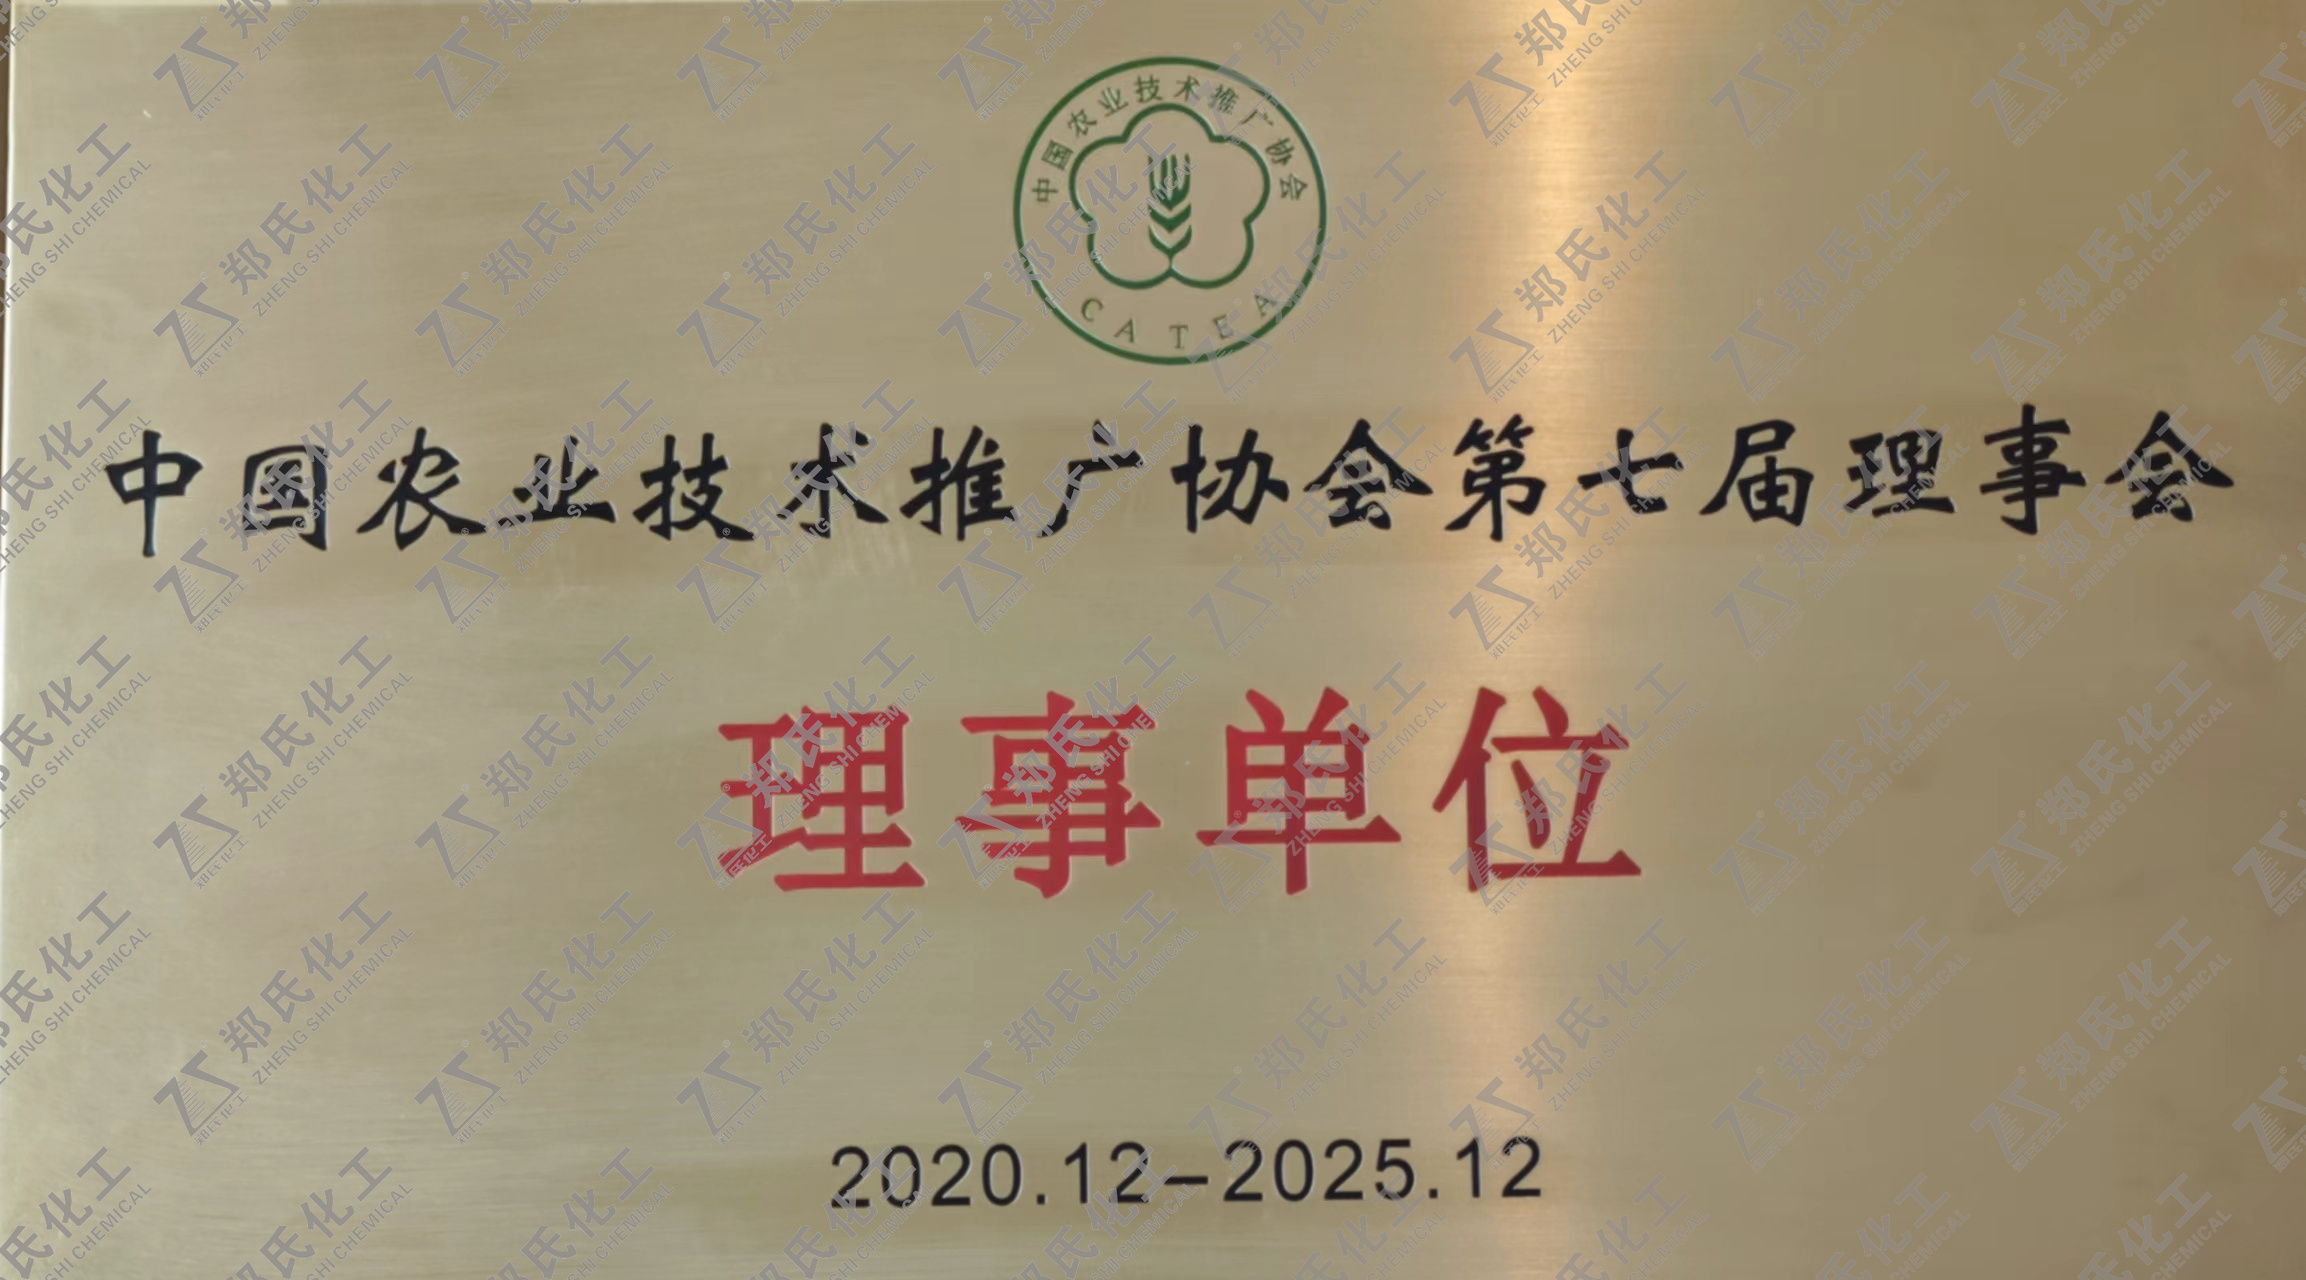 中国农业技术推广协会第七届理事会 理事单位